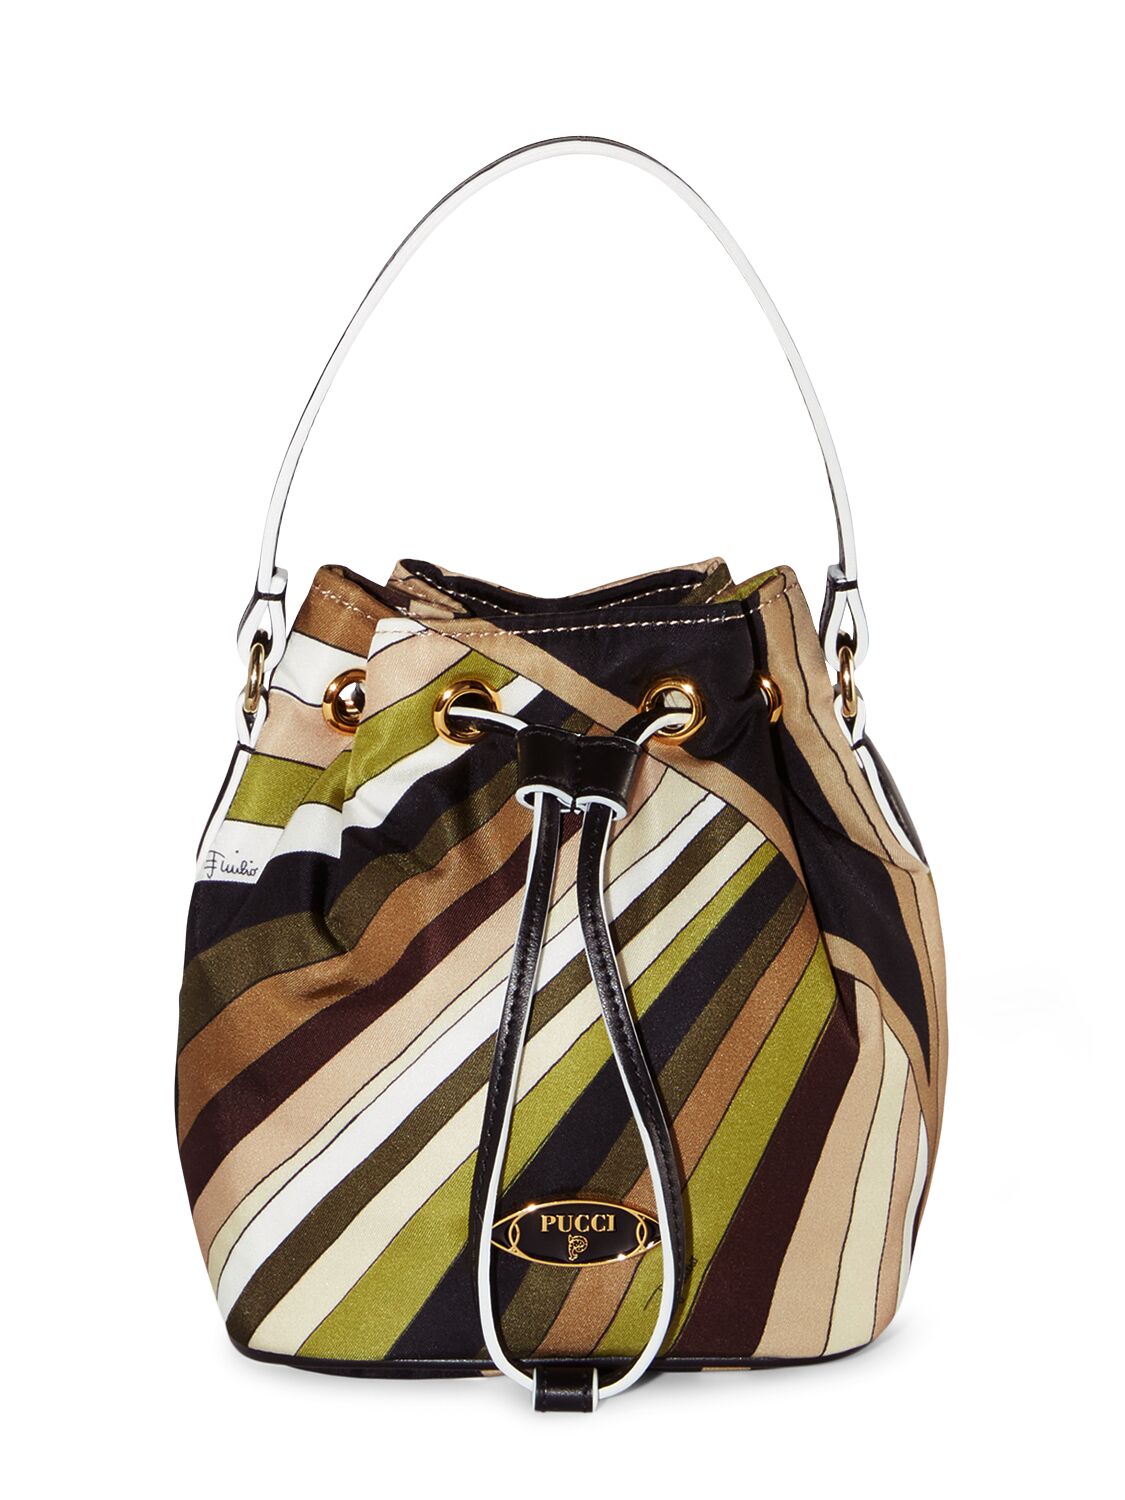 Pucci Small Printed Drawstring Bag In Khaki,moss